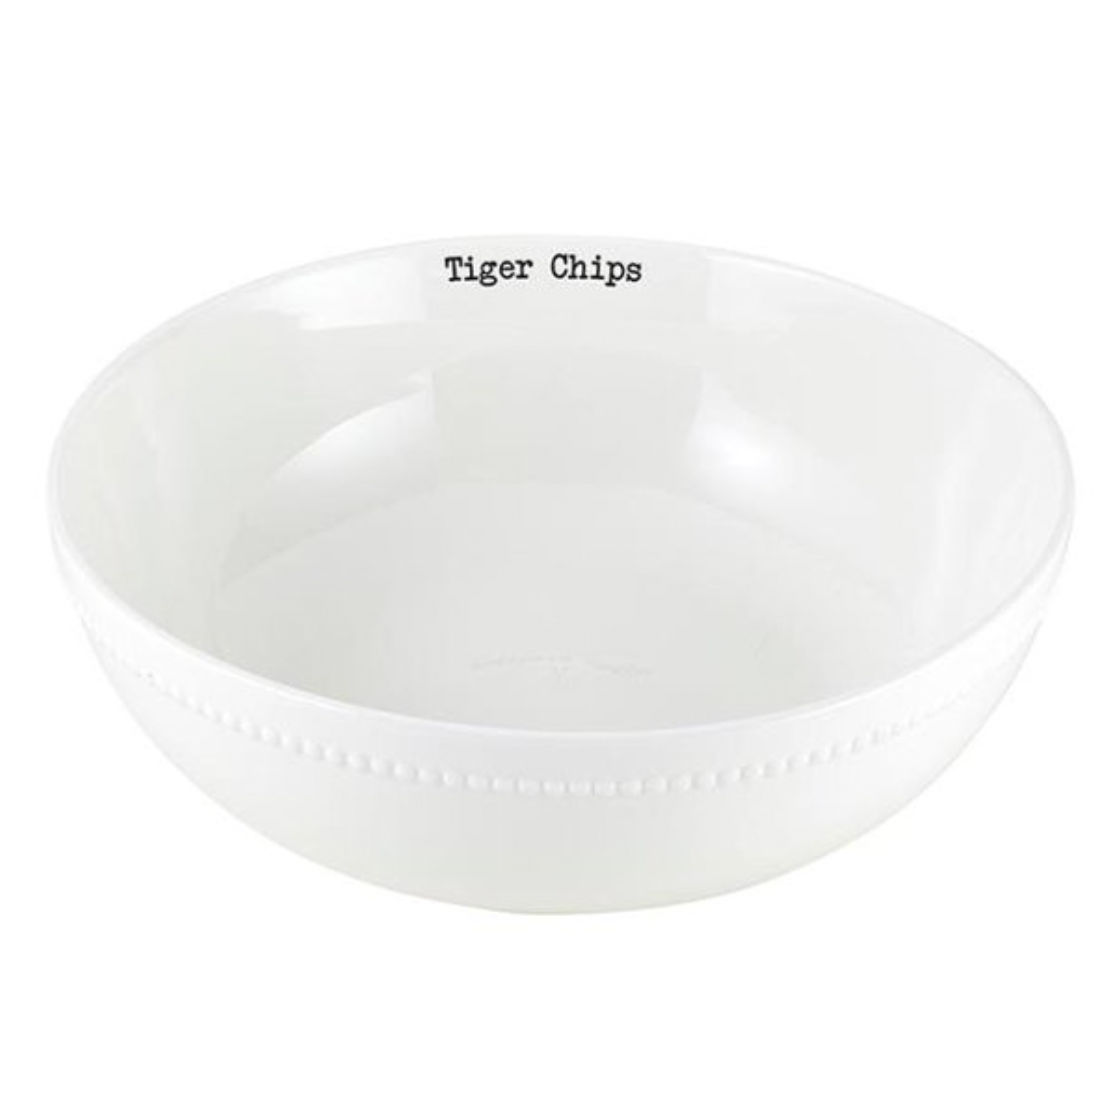 Tiger Chip Bowl